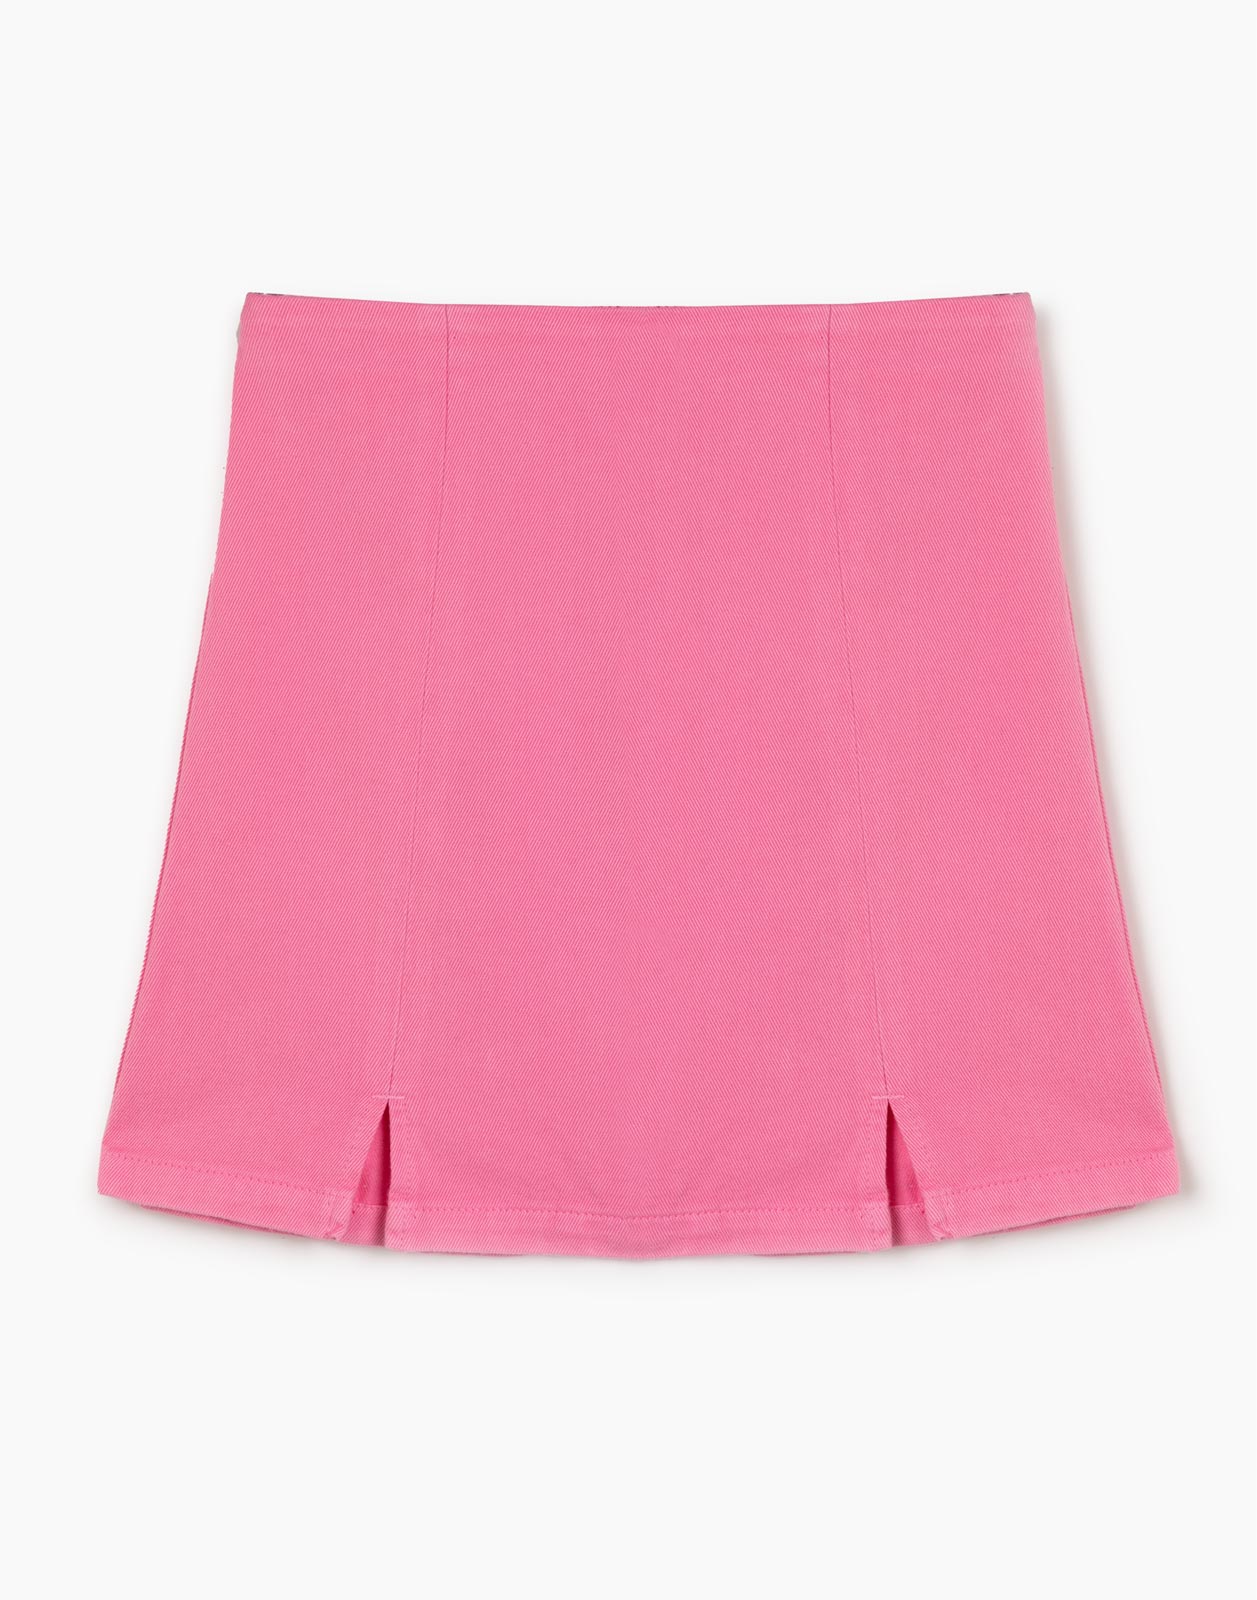 Розовая джинсовая юбка для девочки р.134-140